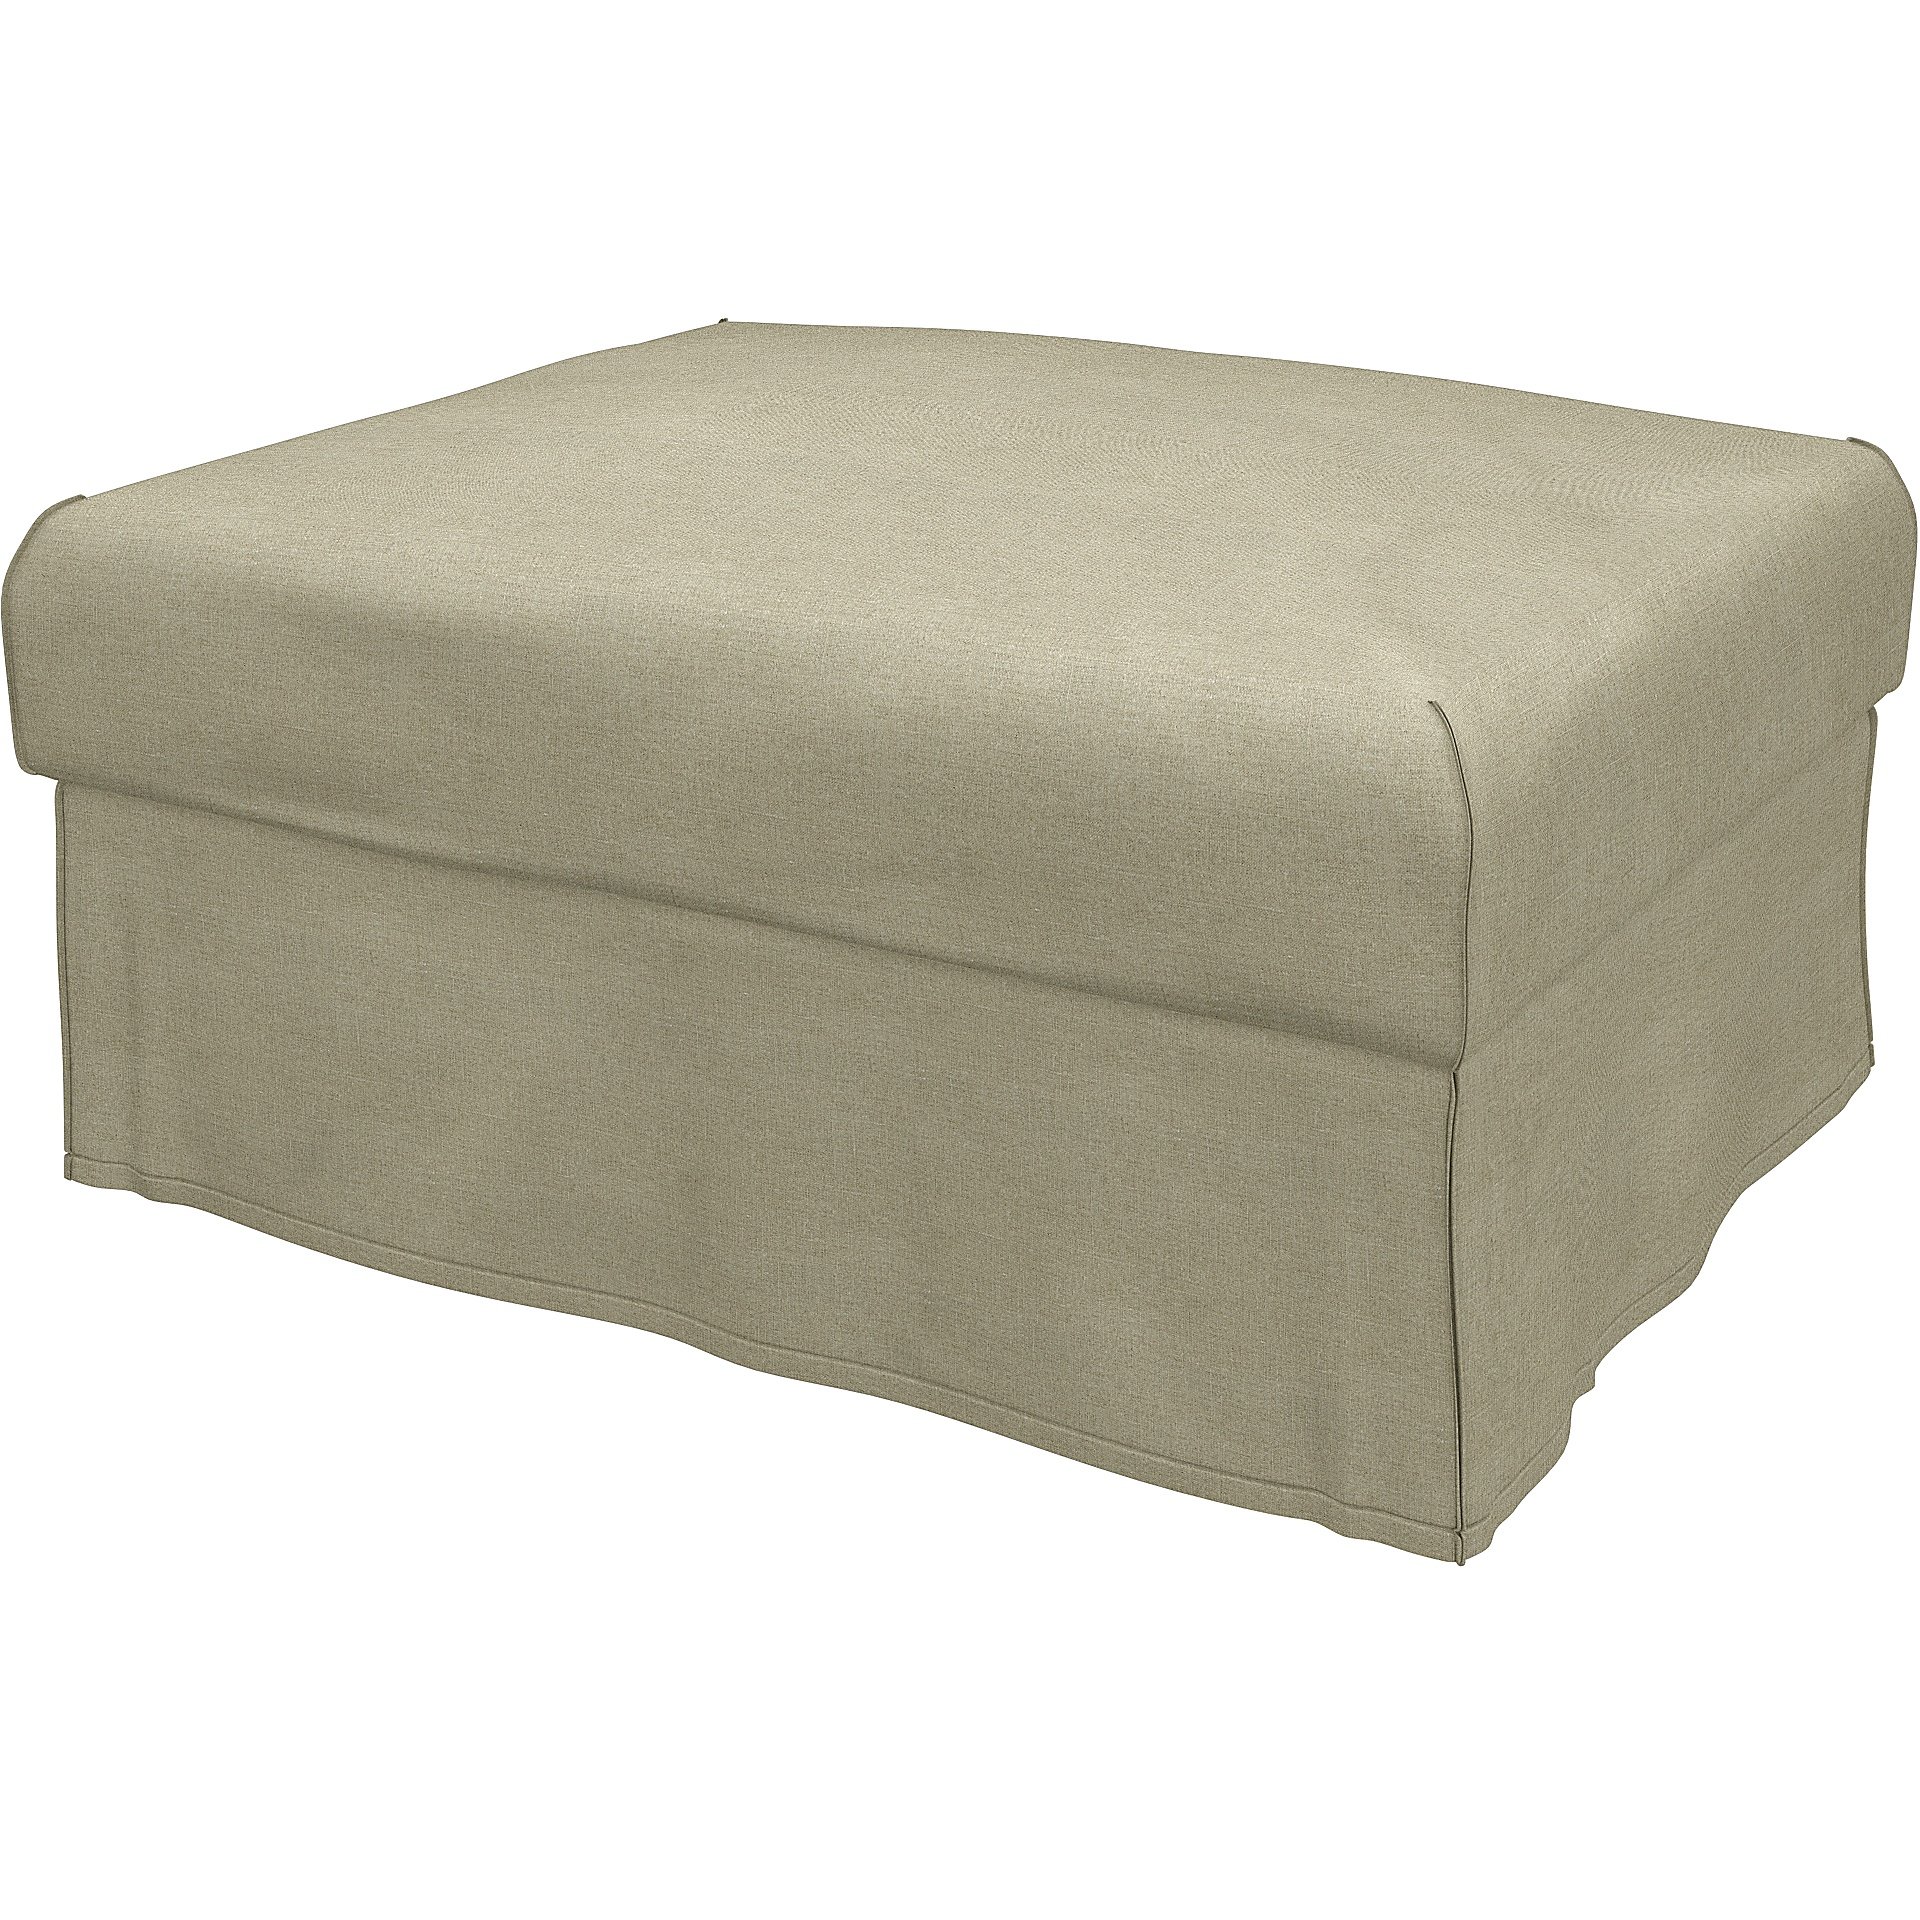 IKEA - Vimle footstool cover, Pebble, Linen - Bemz